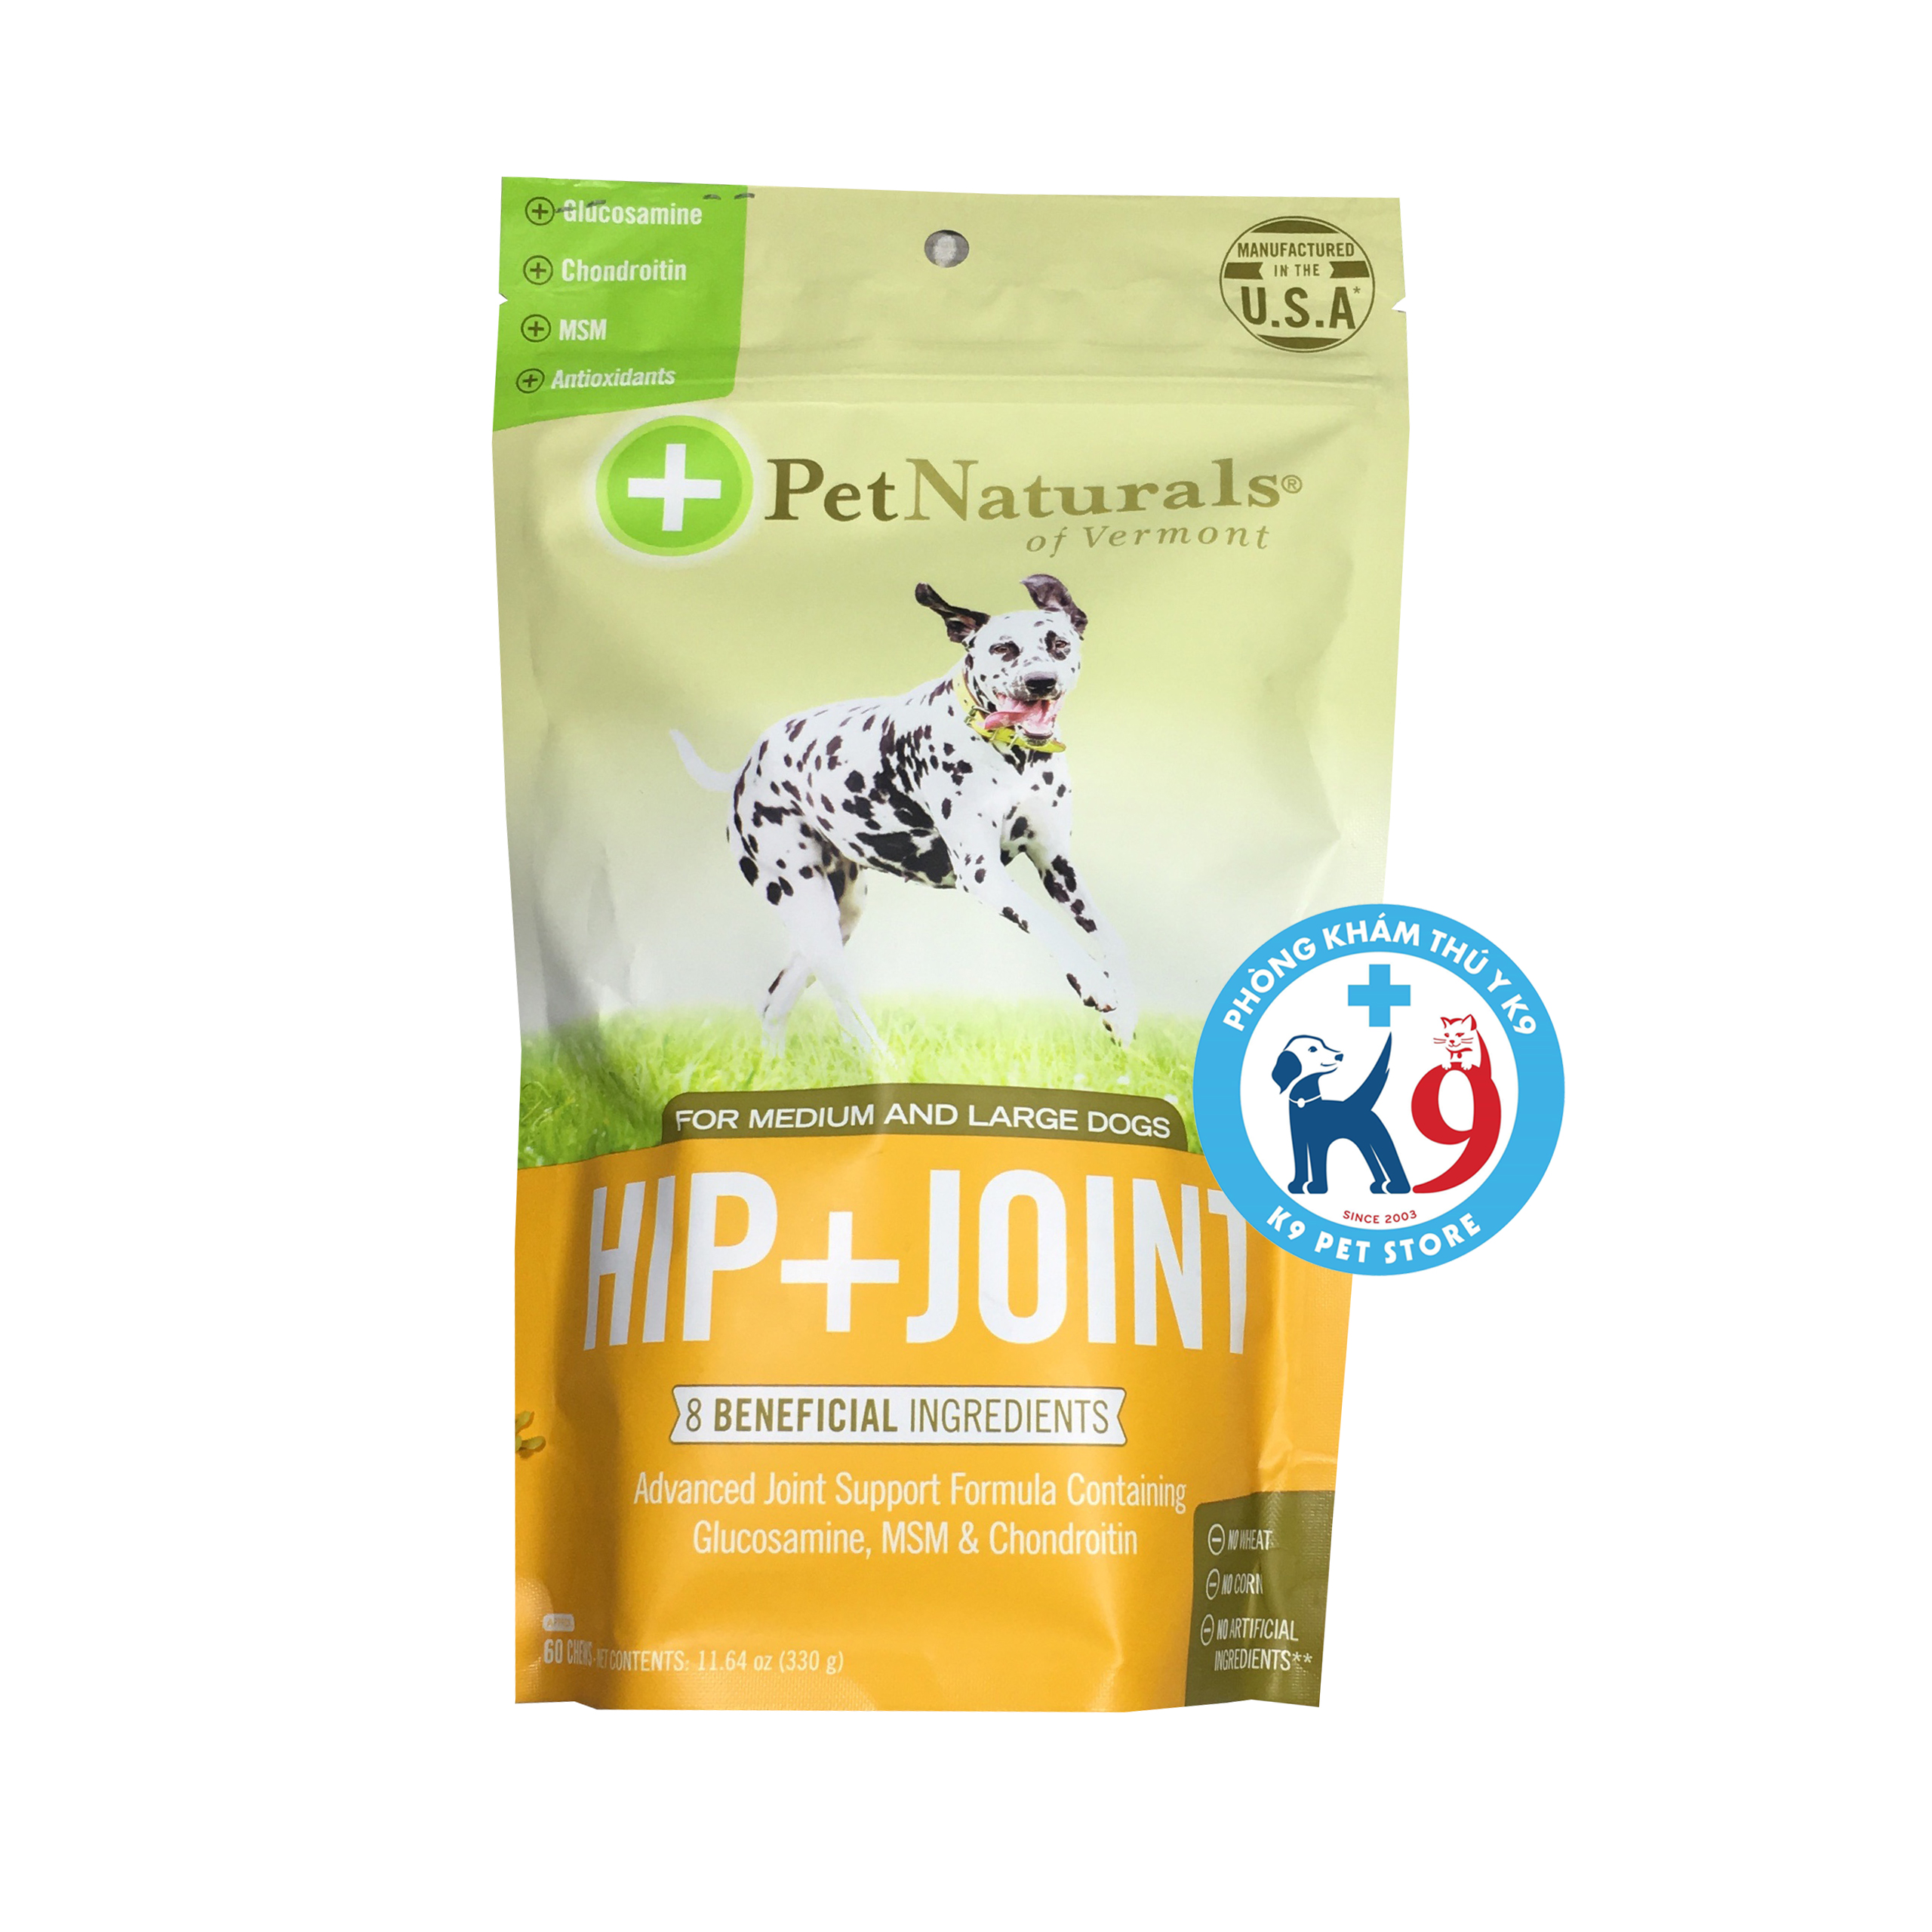 Viên dẻo Hip+Joint hỗ trợ điều trị các vấn đề về xương cho chó 330gr 45 viên/gói